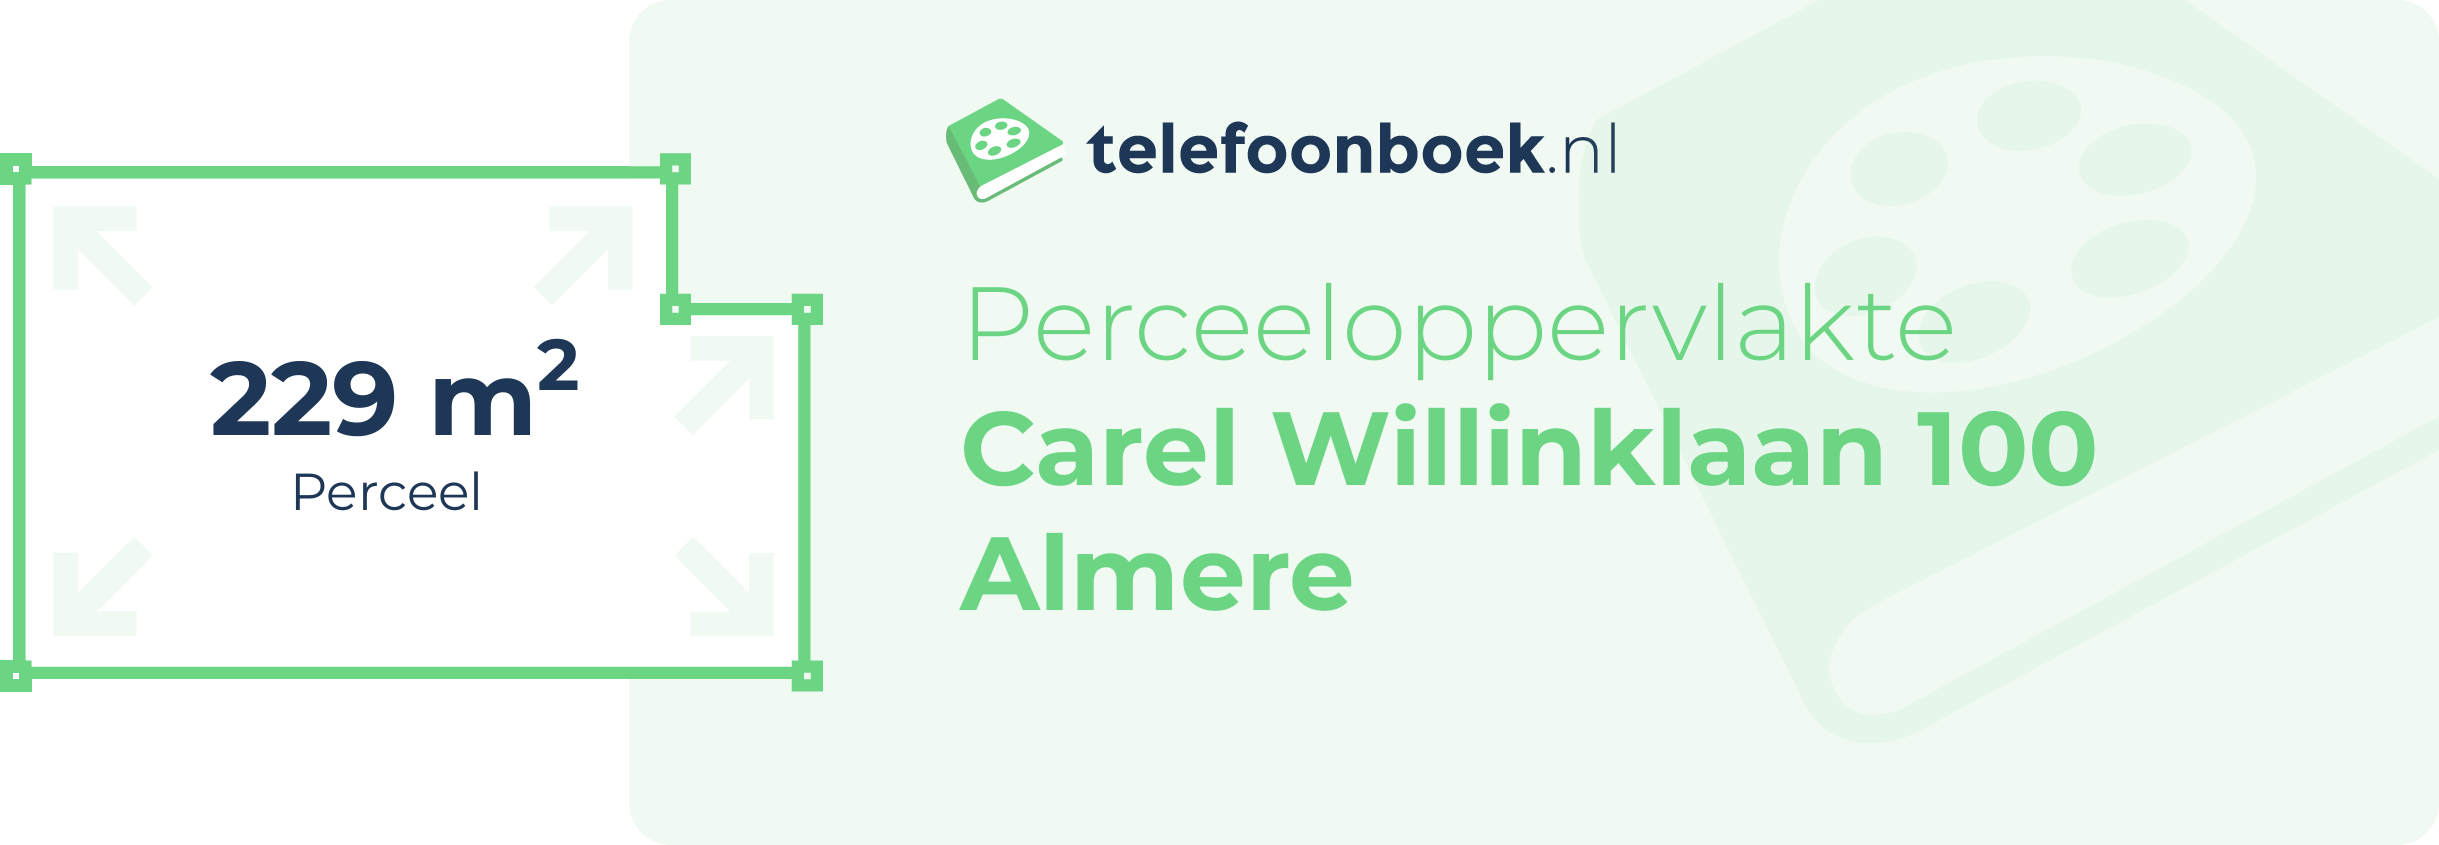 Perceeloppervlakte Carel Willinklaan 100 Almere